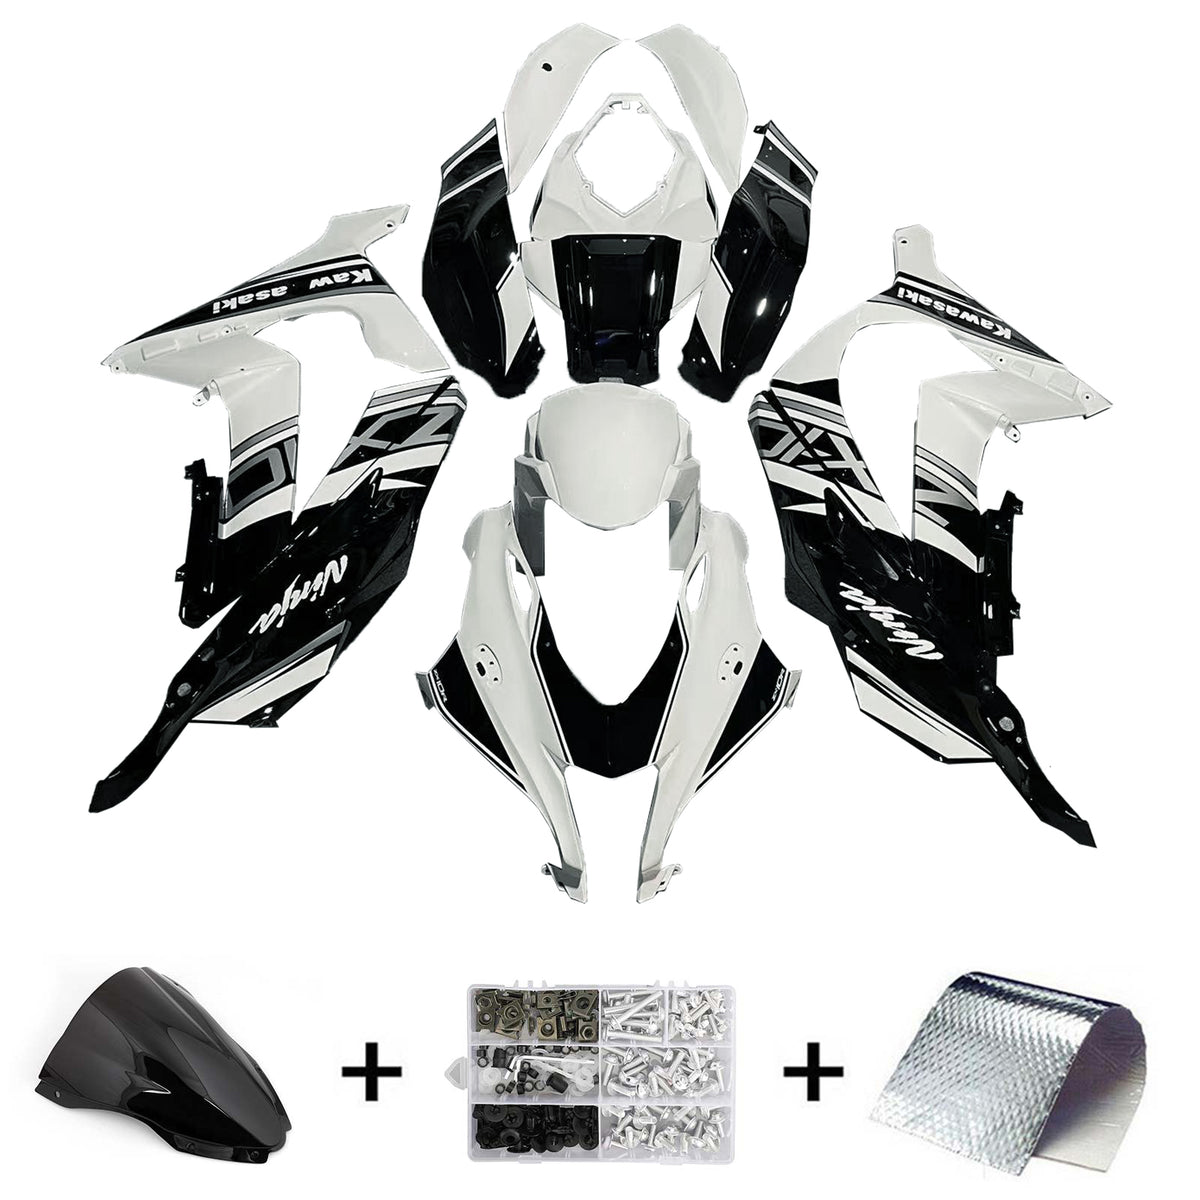 Amotopart 2016-2020 ZX10R Kawasaki Black&White Style3 Fairing Kit